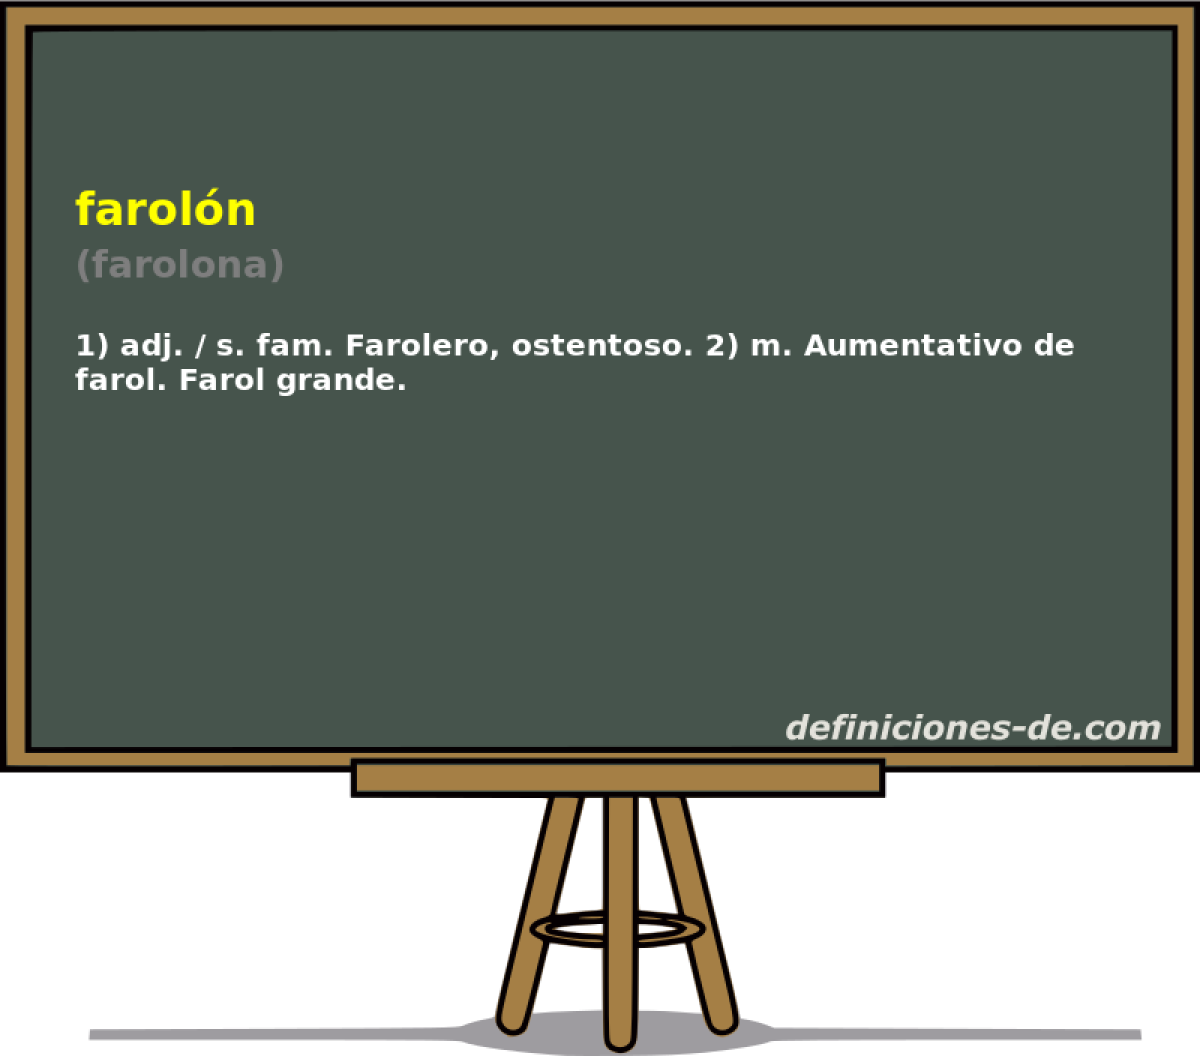 faroln (farolona)